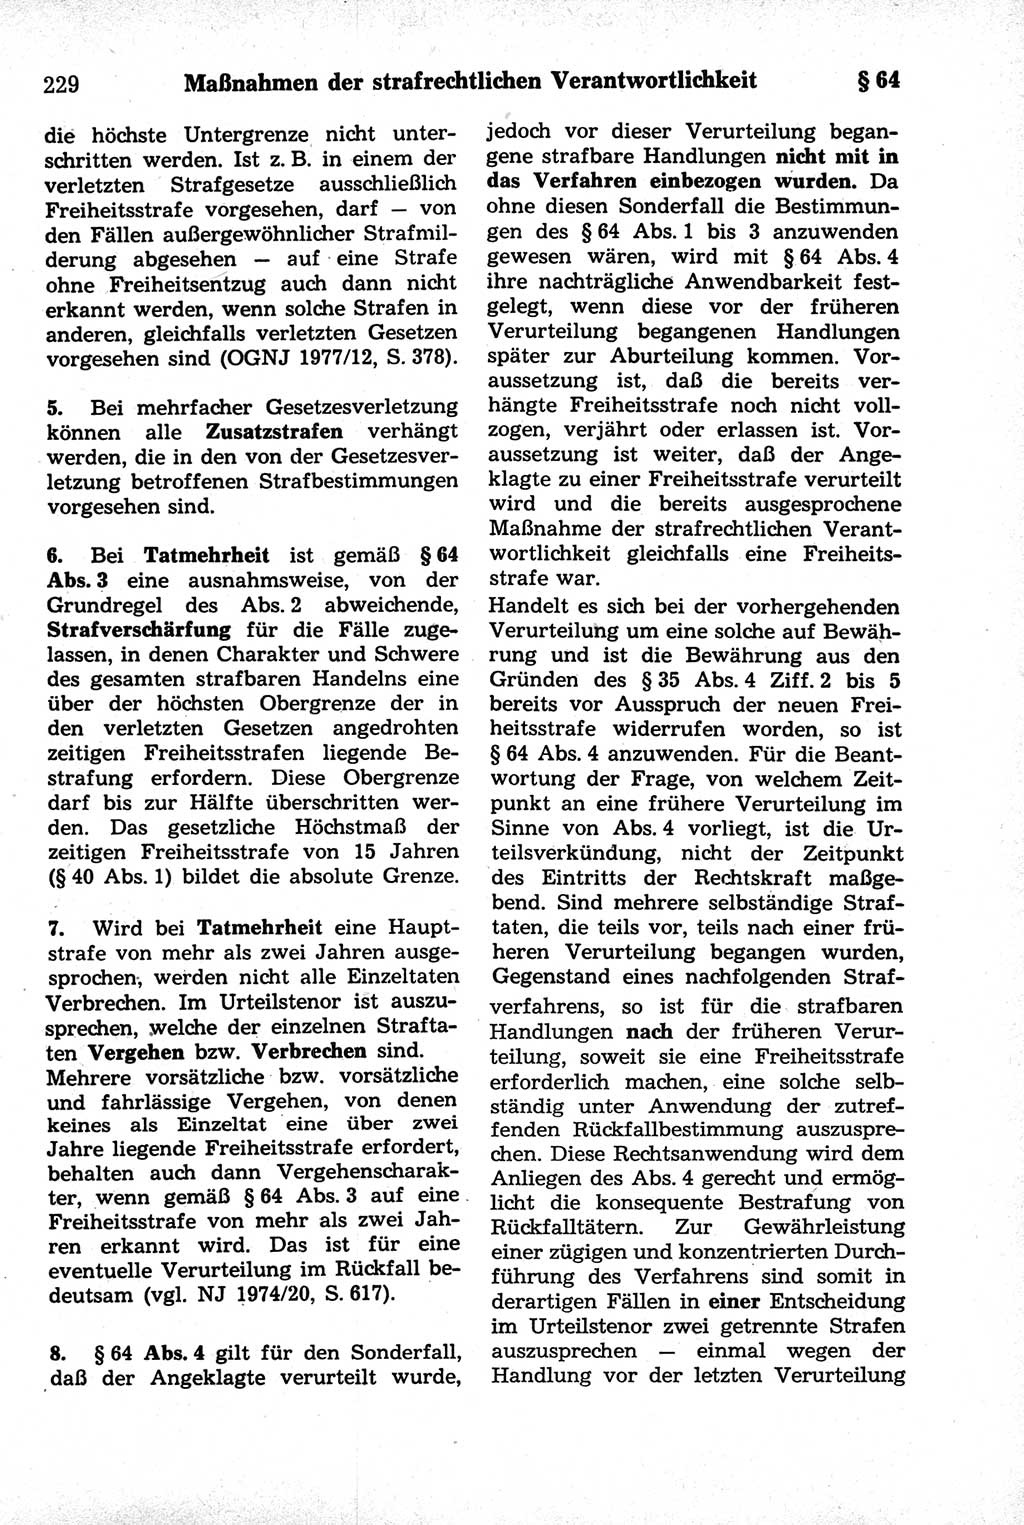 Strafrecht der Deutschen Demokratischen Republik (DDR), Kommentar zum Strafgesetzbuch (StGB) 1981, Seite 229 (Strafr. DDR Komm. StGB 1981, S. 229)